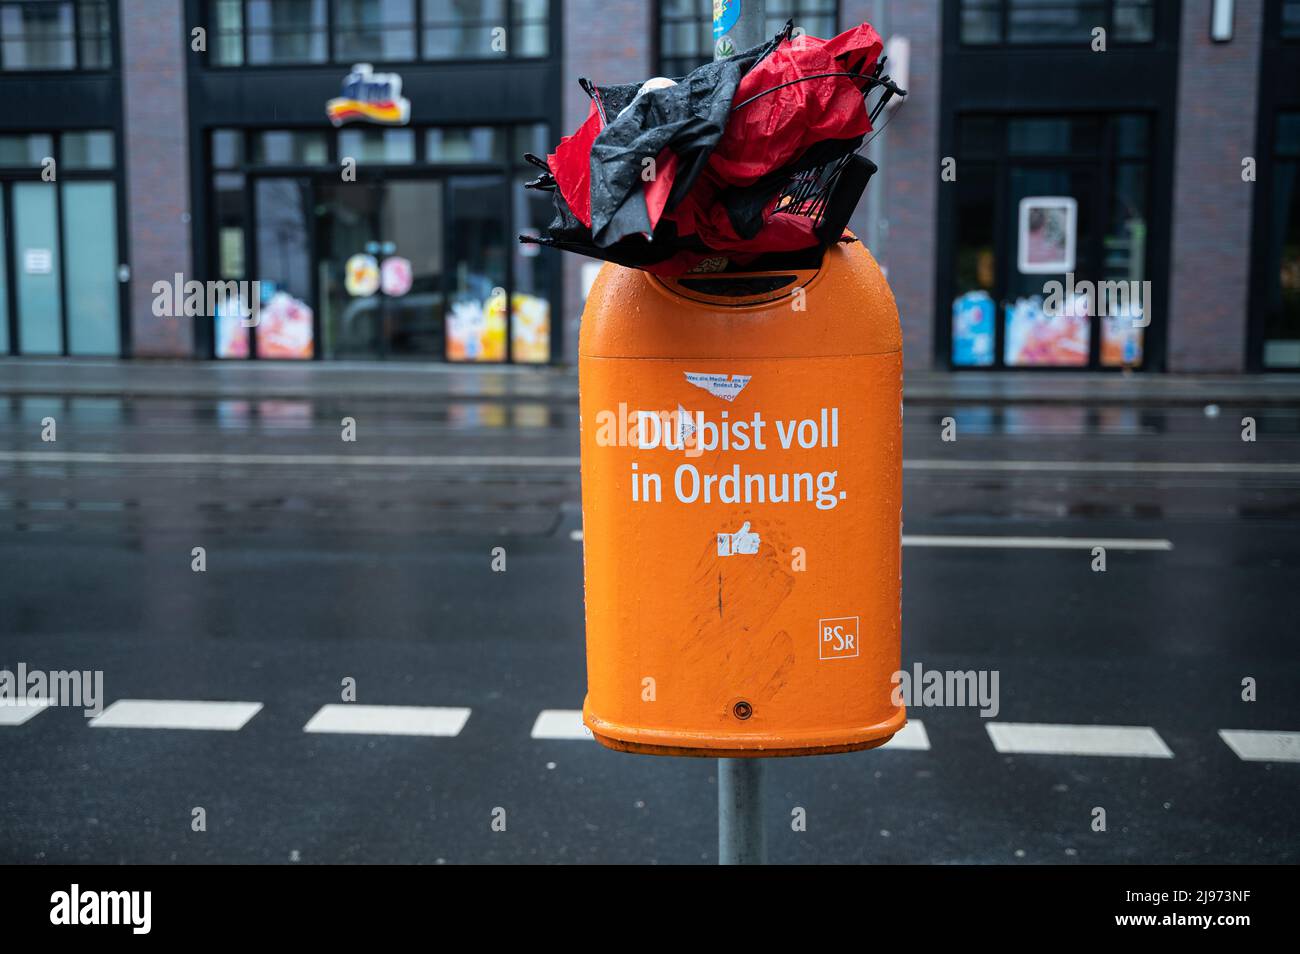 20.02.2022, Berlin, Deutschland, Europa - Ein zerbrochener Regenschirm, der in einen überfließenden Mülleimer der BSR mit der Aufschrift 'Du bist voll in Ordnung' gequetscht wurde. Stockfoto